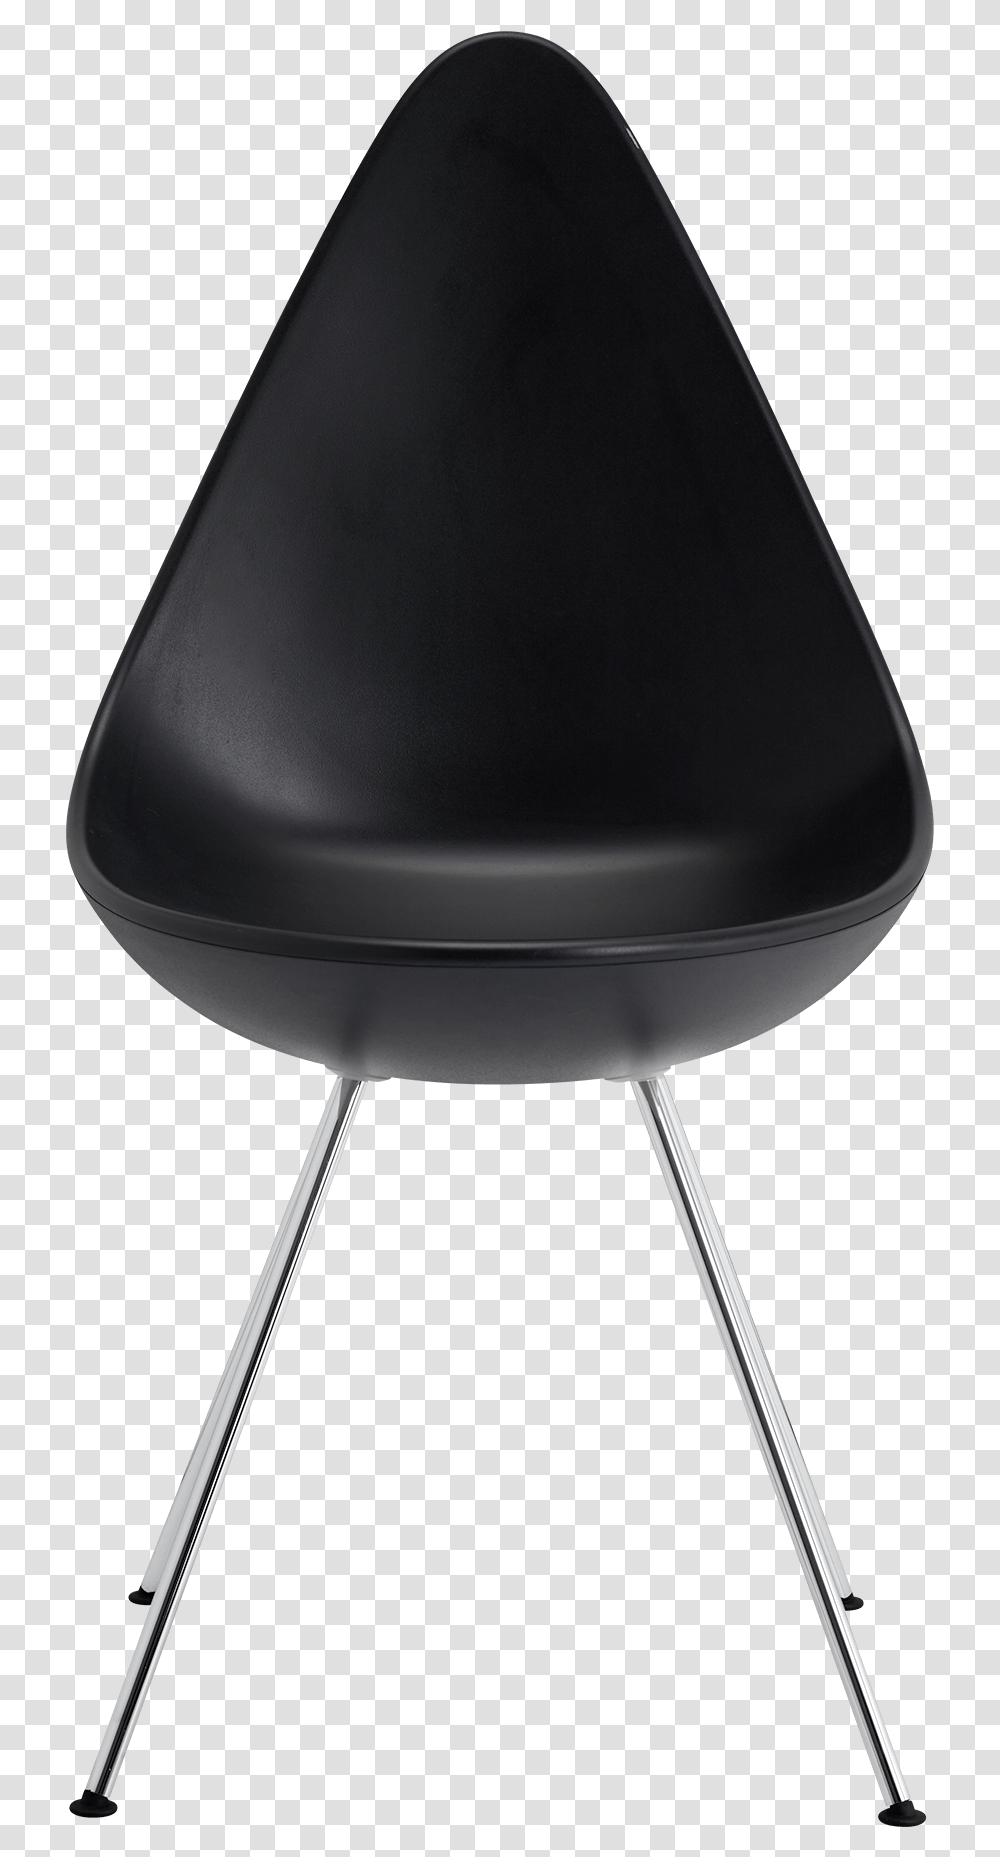 The Drop Chair Arne Jacobsen Black Monochrome Base Arne Jacobsen Drop Chair, Furniture, Lamp, Sweets, Food Transparent Png